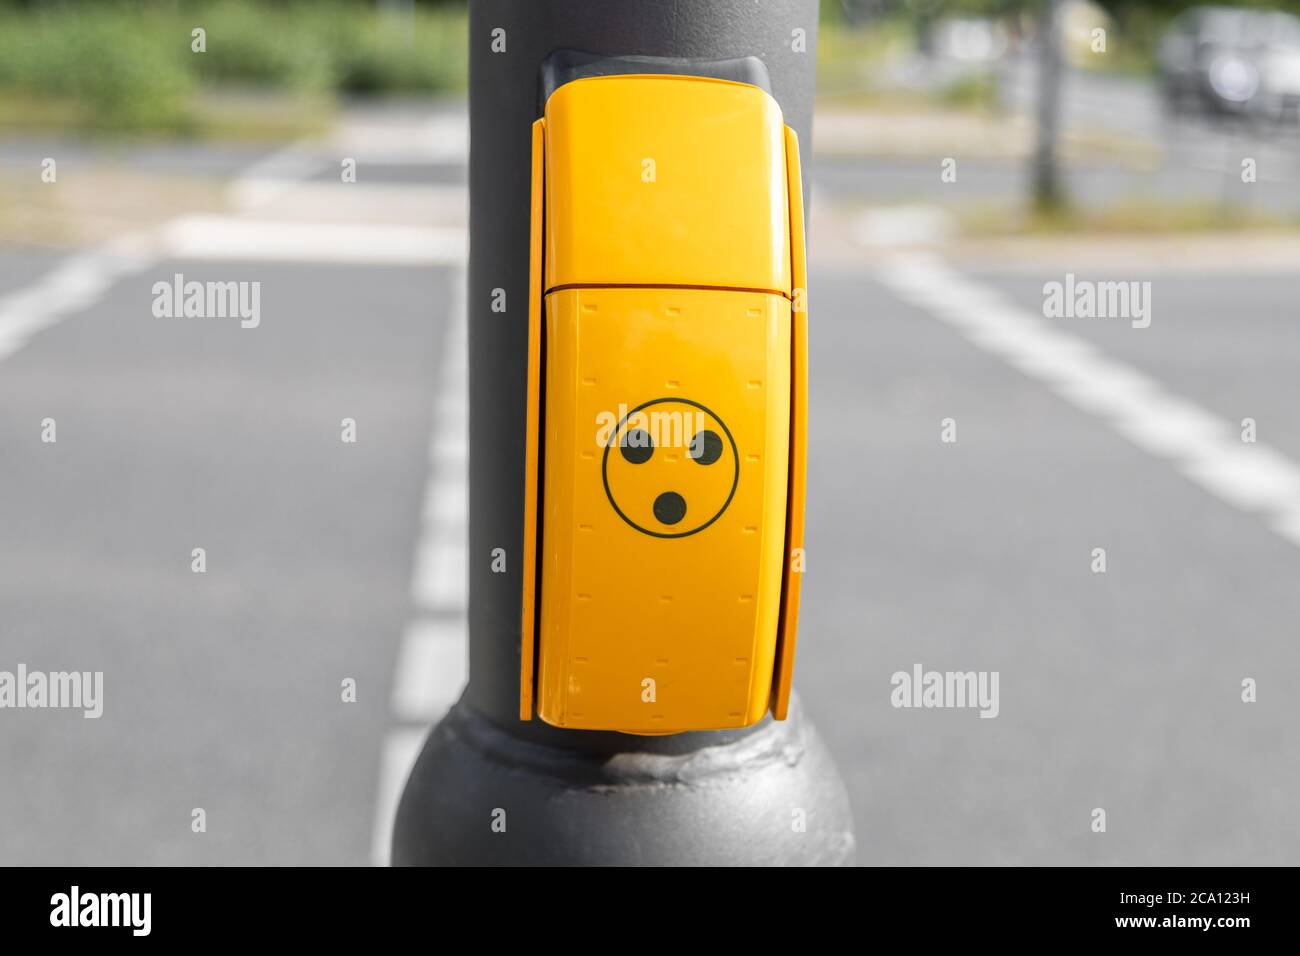 pulsante giallo per persone non vedenti, disabili o disabili al semaforo per ricevere un segnale acustico quando il semaforo è verde per attraversare la strada Foto Stock